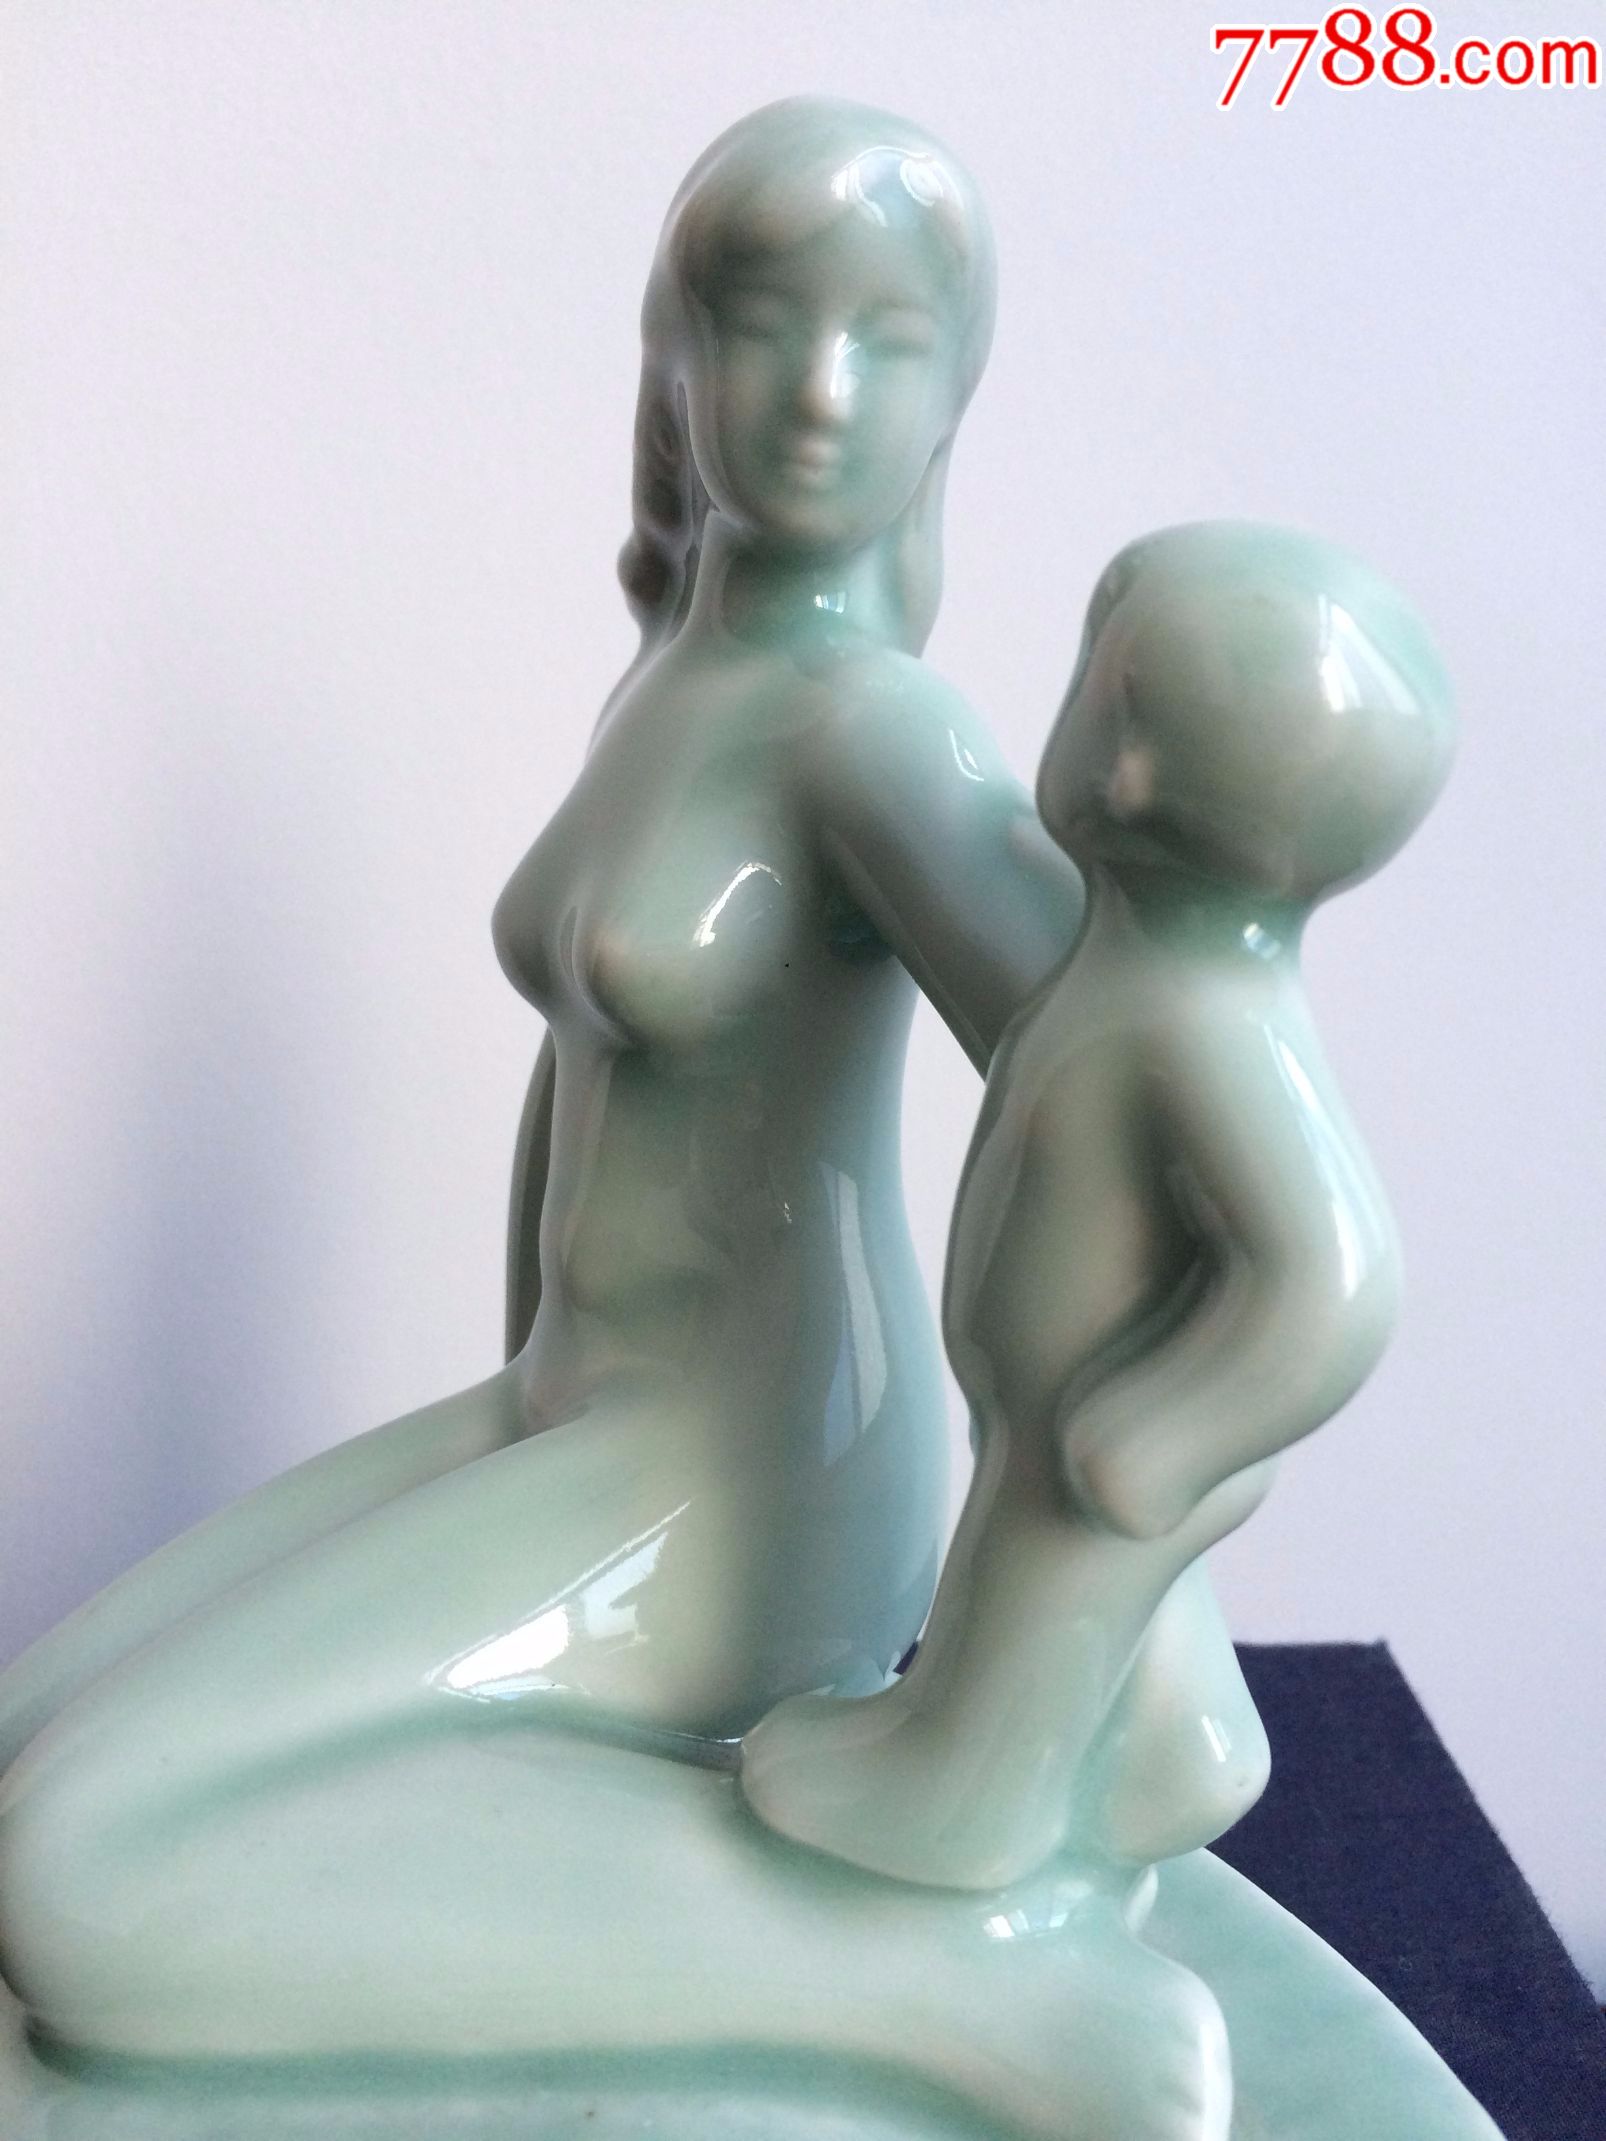 宜兴青瓷母子人物瓷塑七八十年代生产